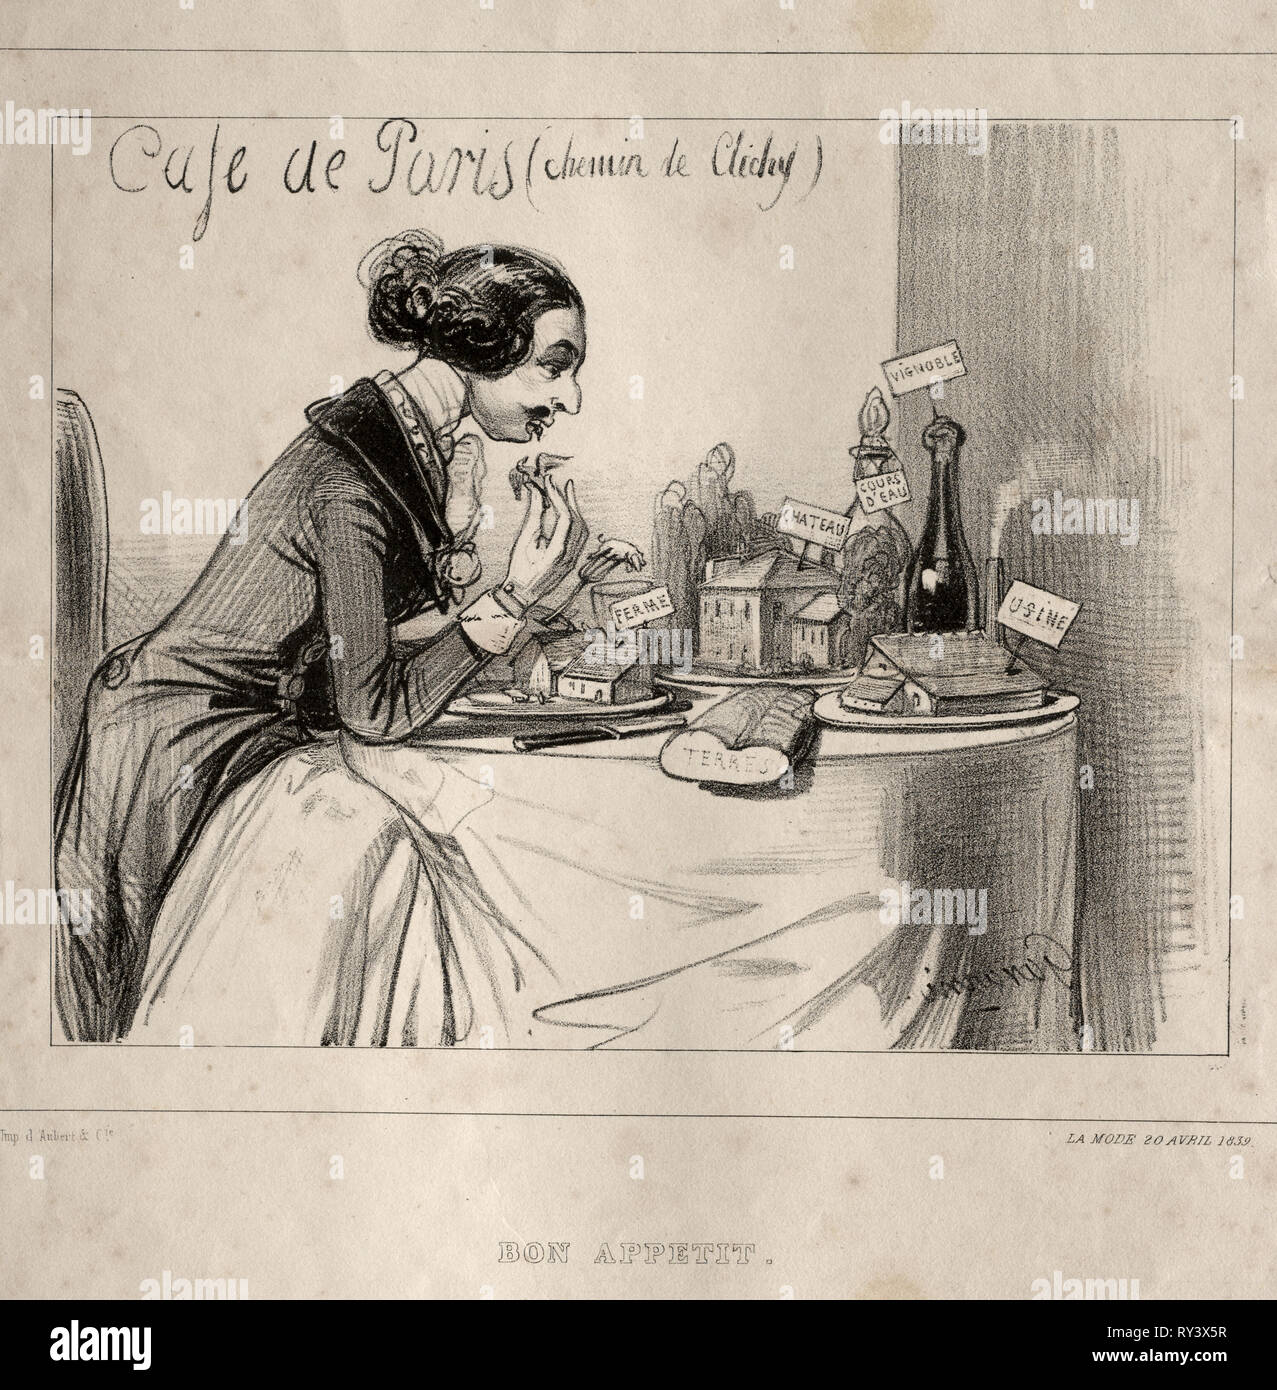 Croquis Fantastique:  Bon Appetit, 1839. Paul Gavarni (French, 1804-1866). Lithograph Stock Photo